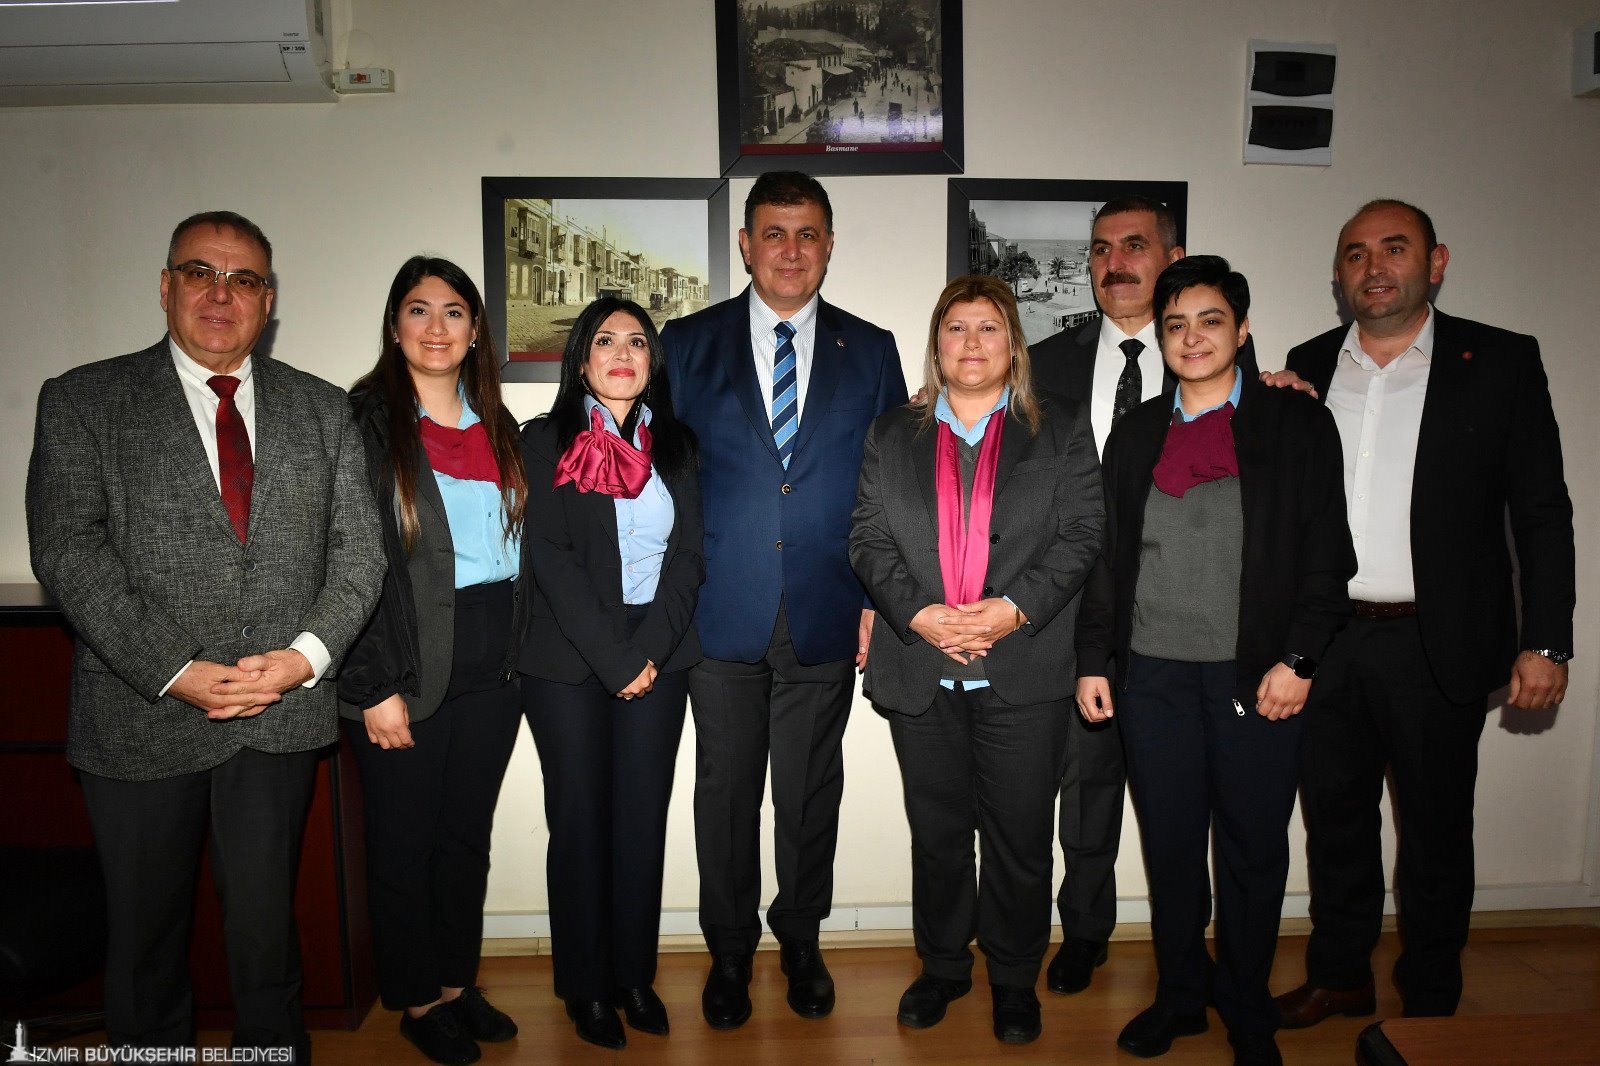 İzmir Büyükşehir Belediye Başkanı Dr. Cemil Tugay